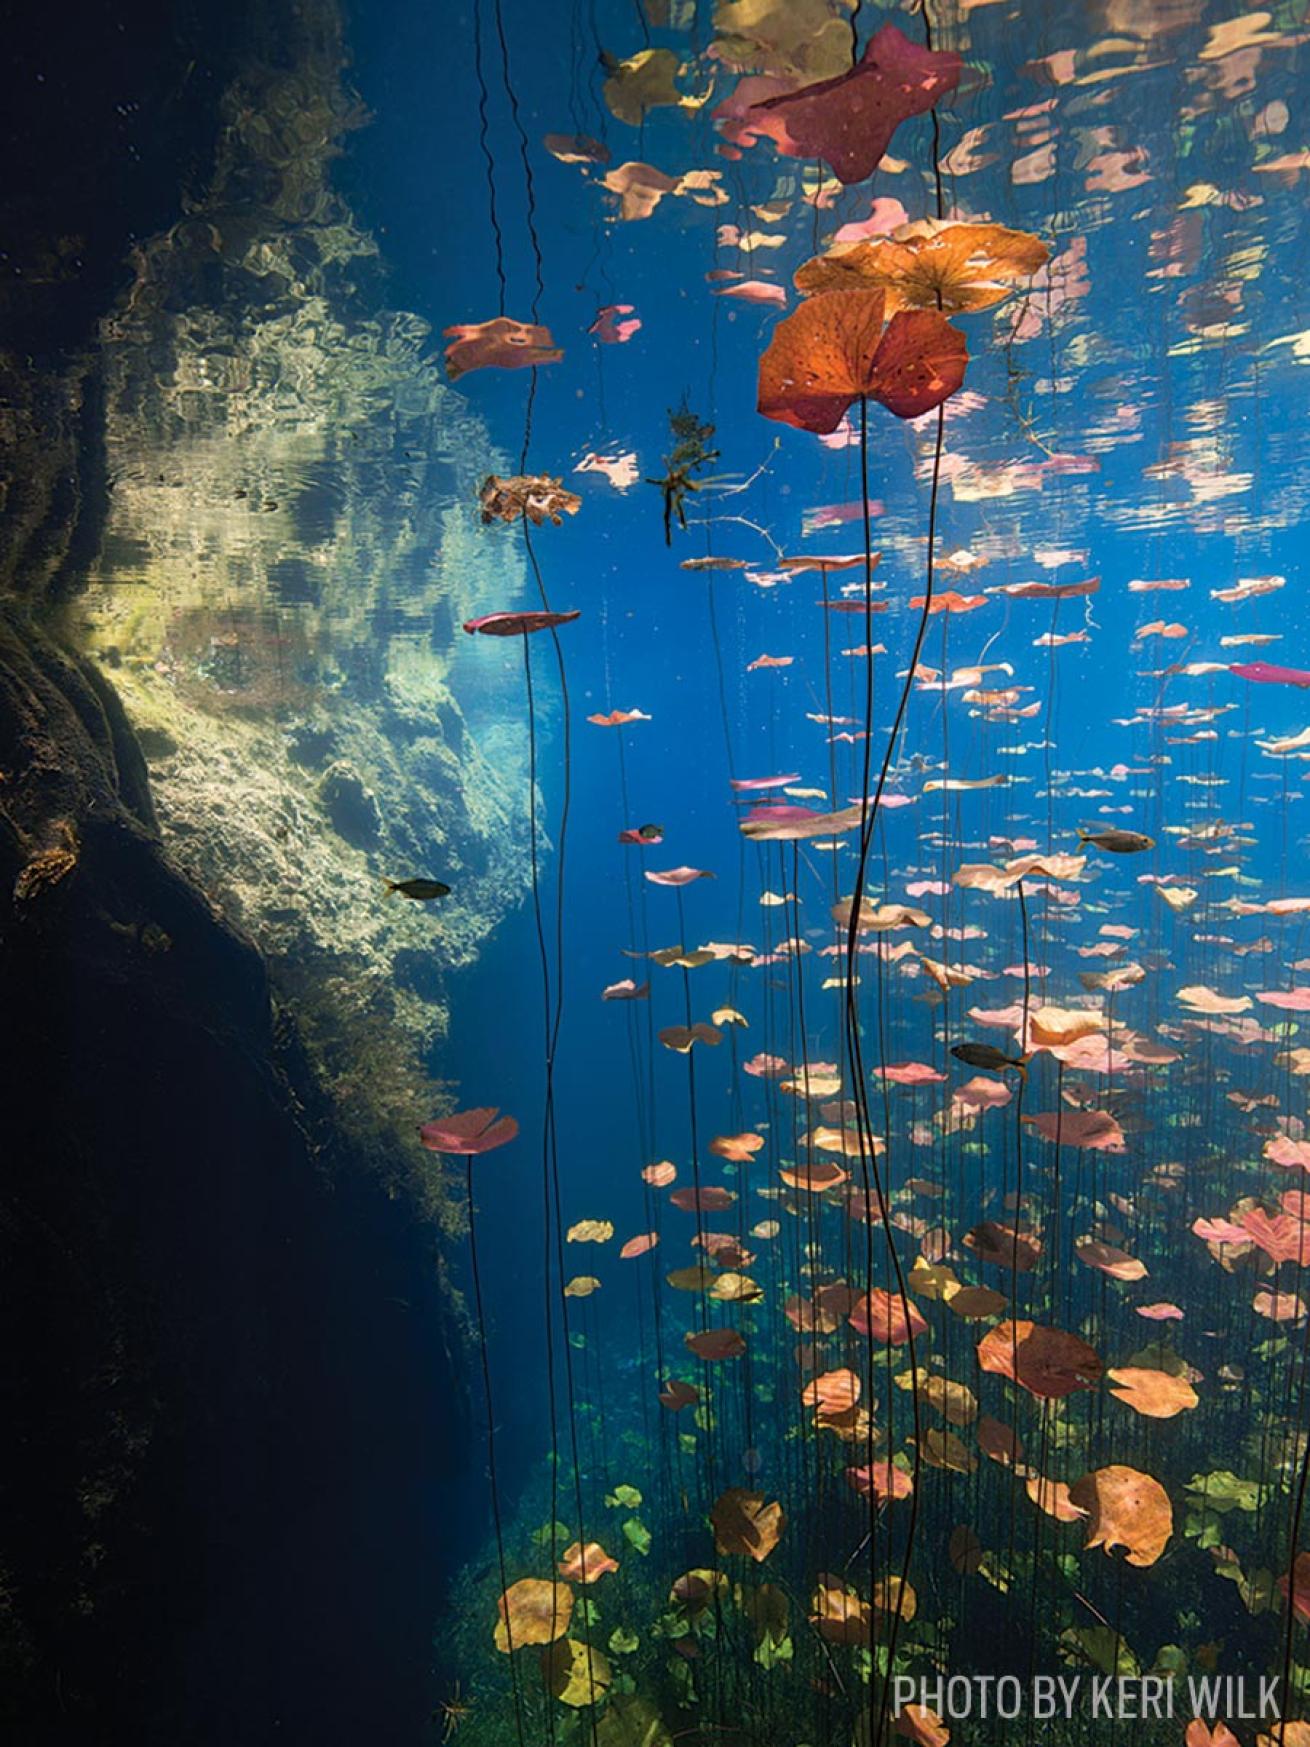 scuba diving car wash cenote mexico photo underwater